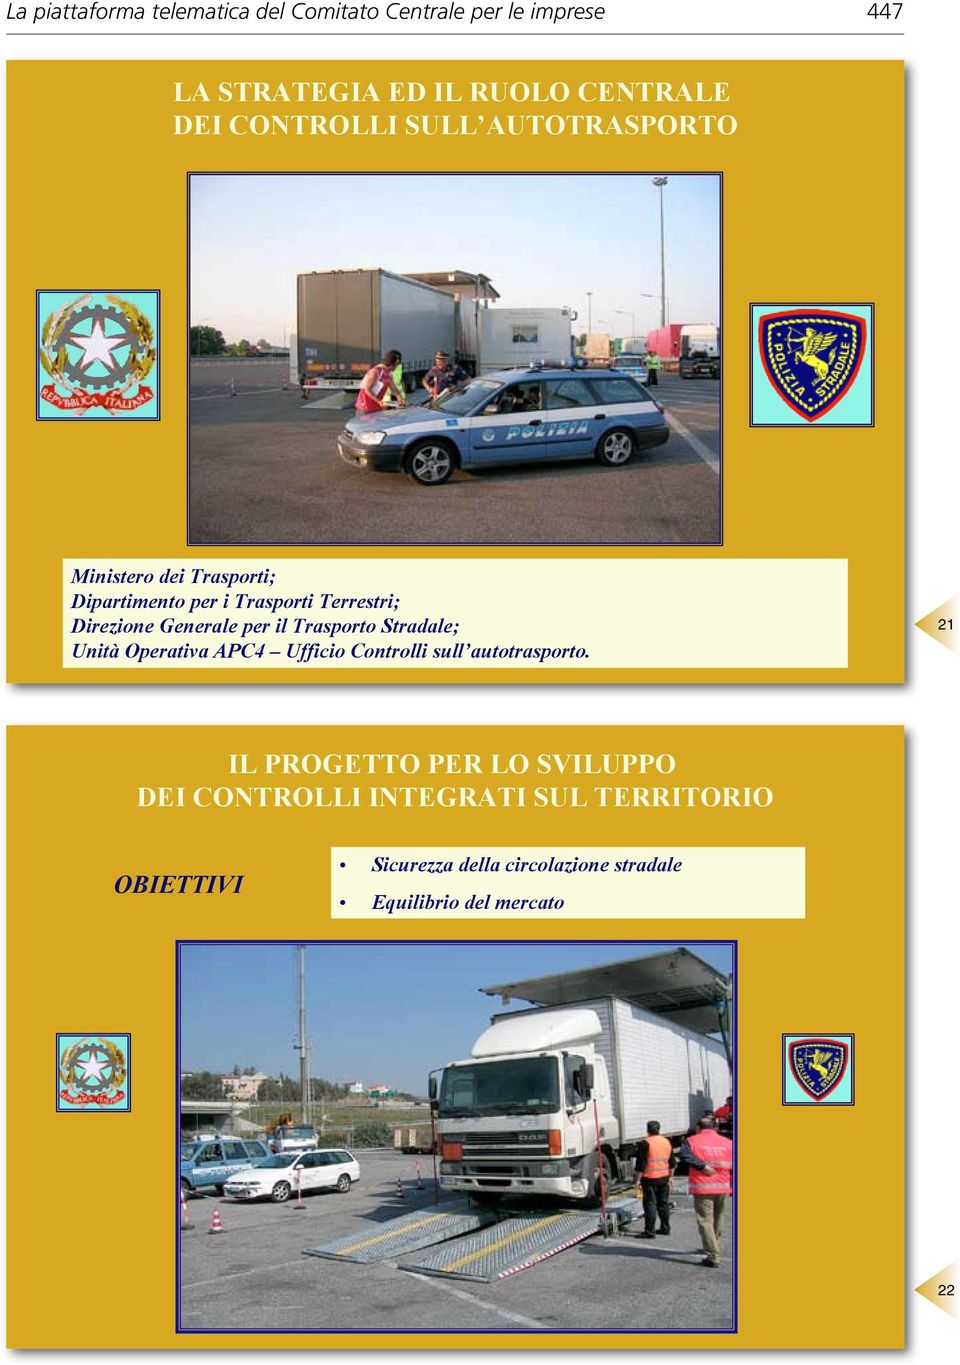 Generale per il Trasporto Stradale; Unità Operativa APC4 Ufficio Controlli sull autotrasporto.